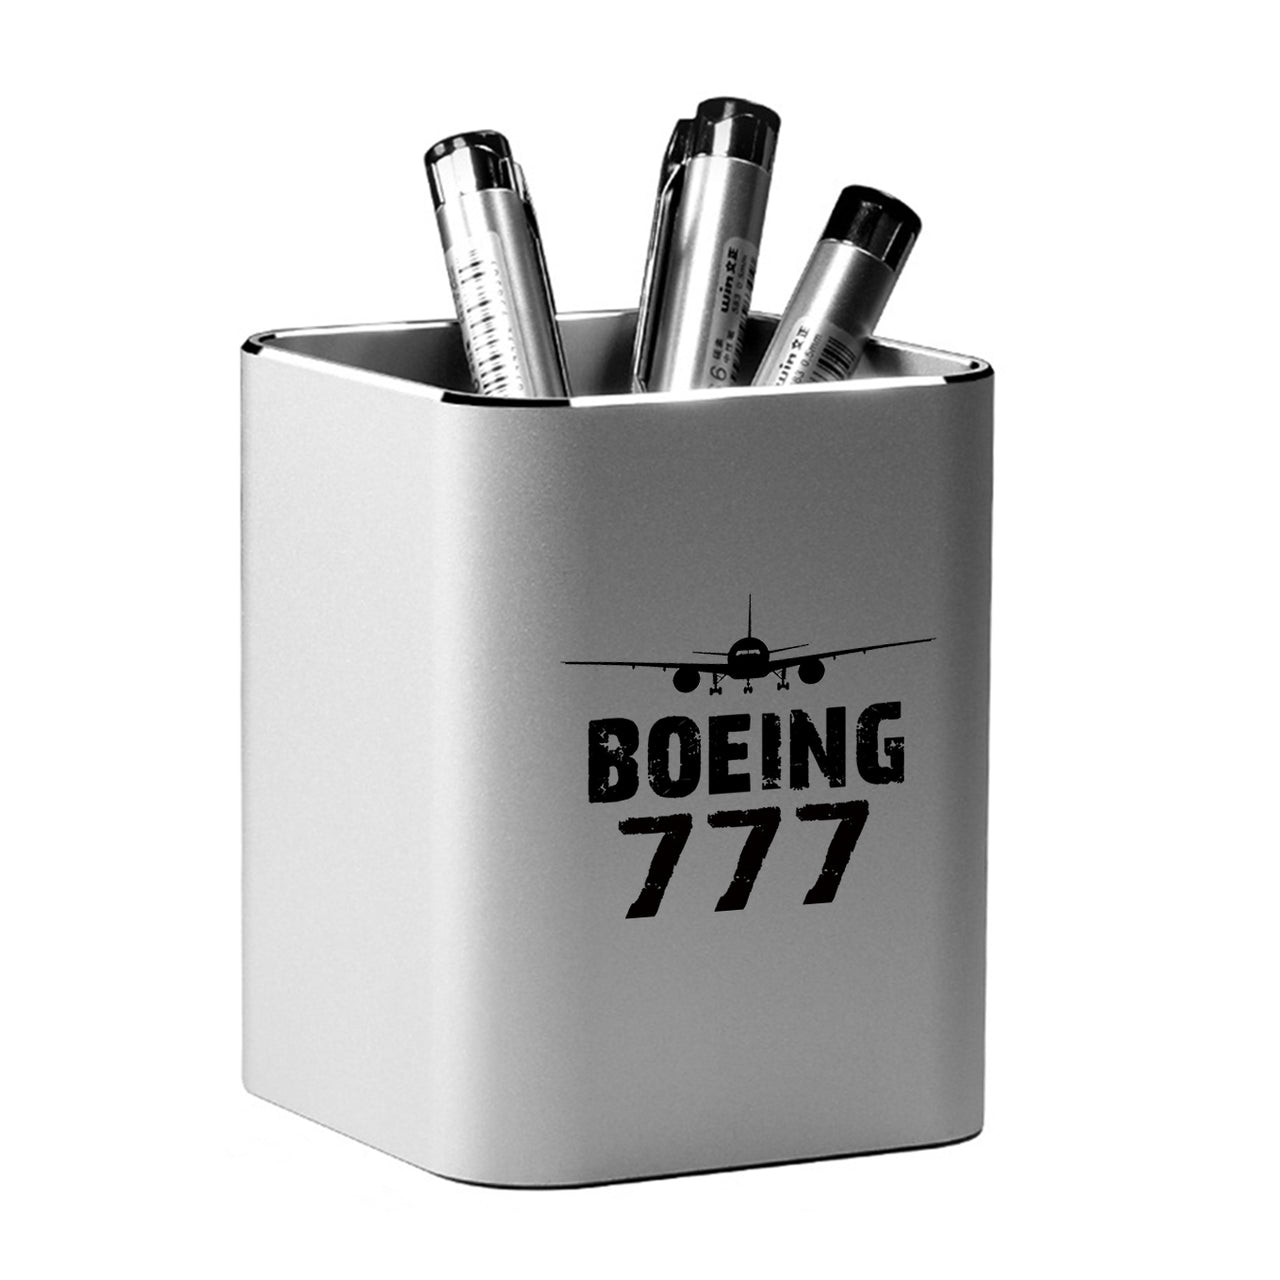 Boeing 777 & Plane Designed Aluminium Alloy Pen Holders